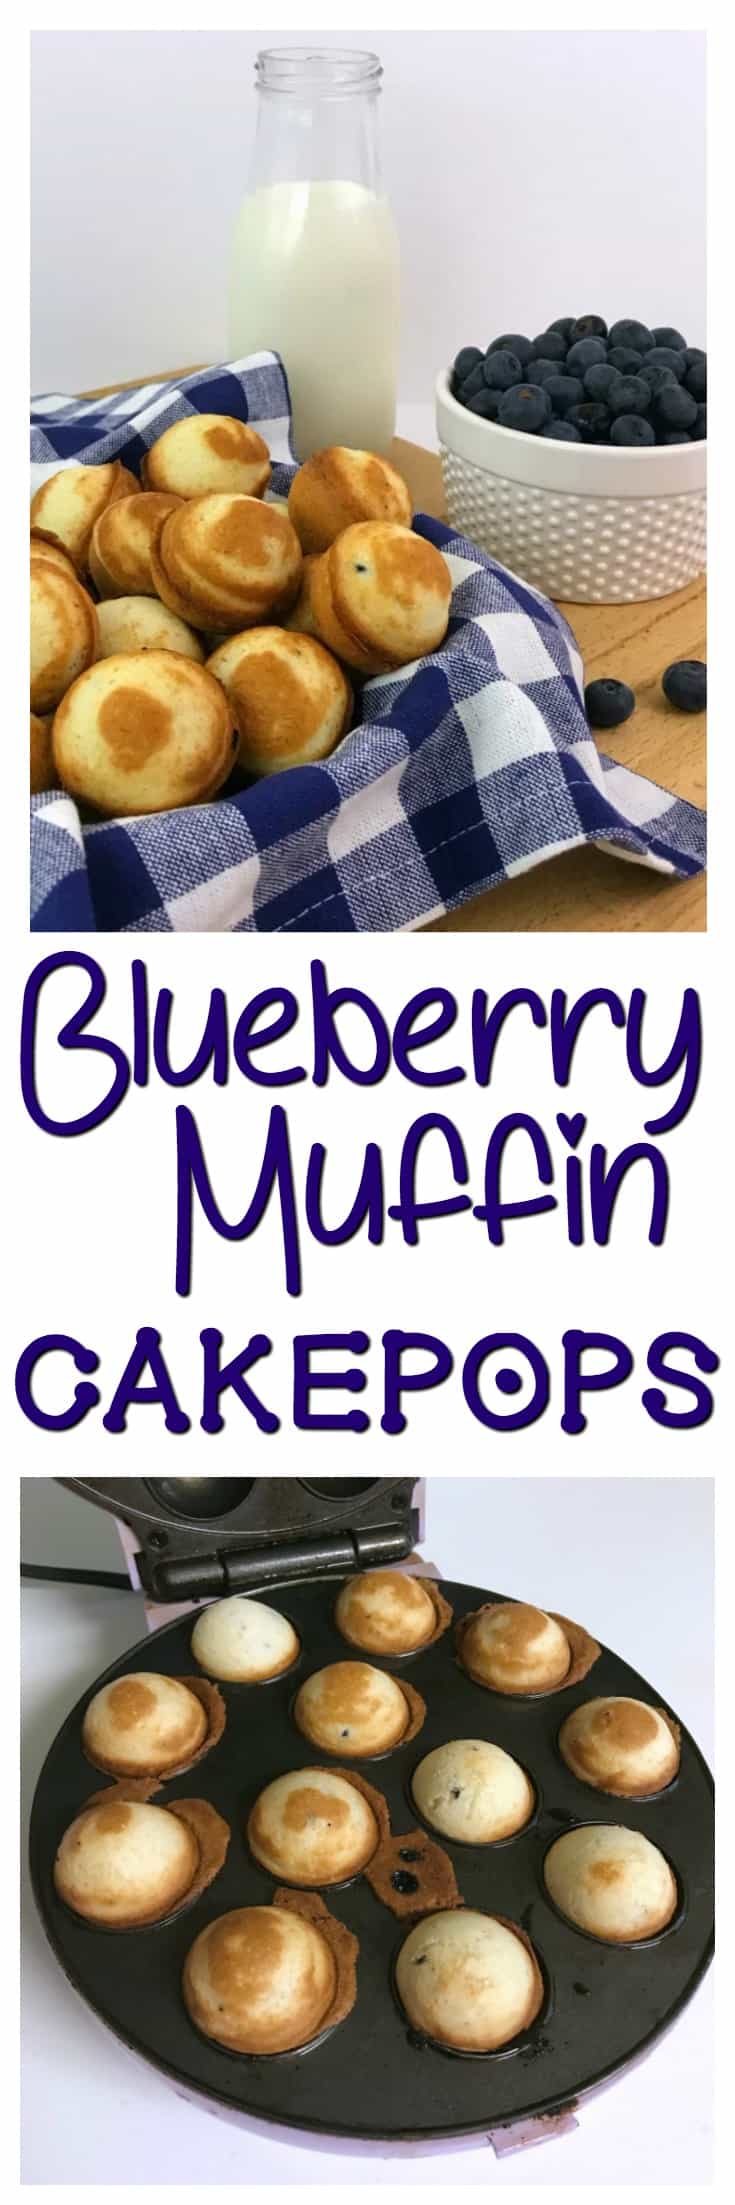 making muffins in babycakes cupcake maker  Babycakes cupcake maker,  Cupcake maker, Cake pop maker